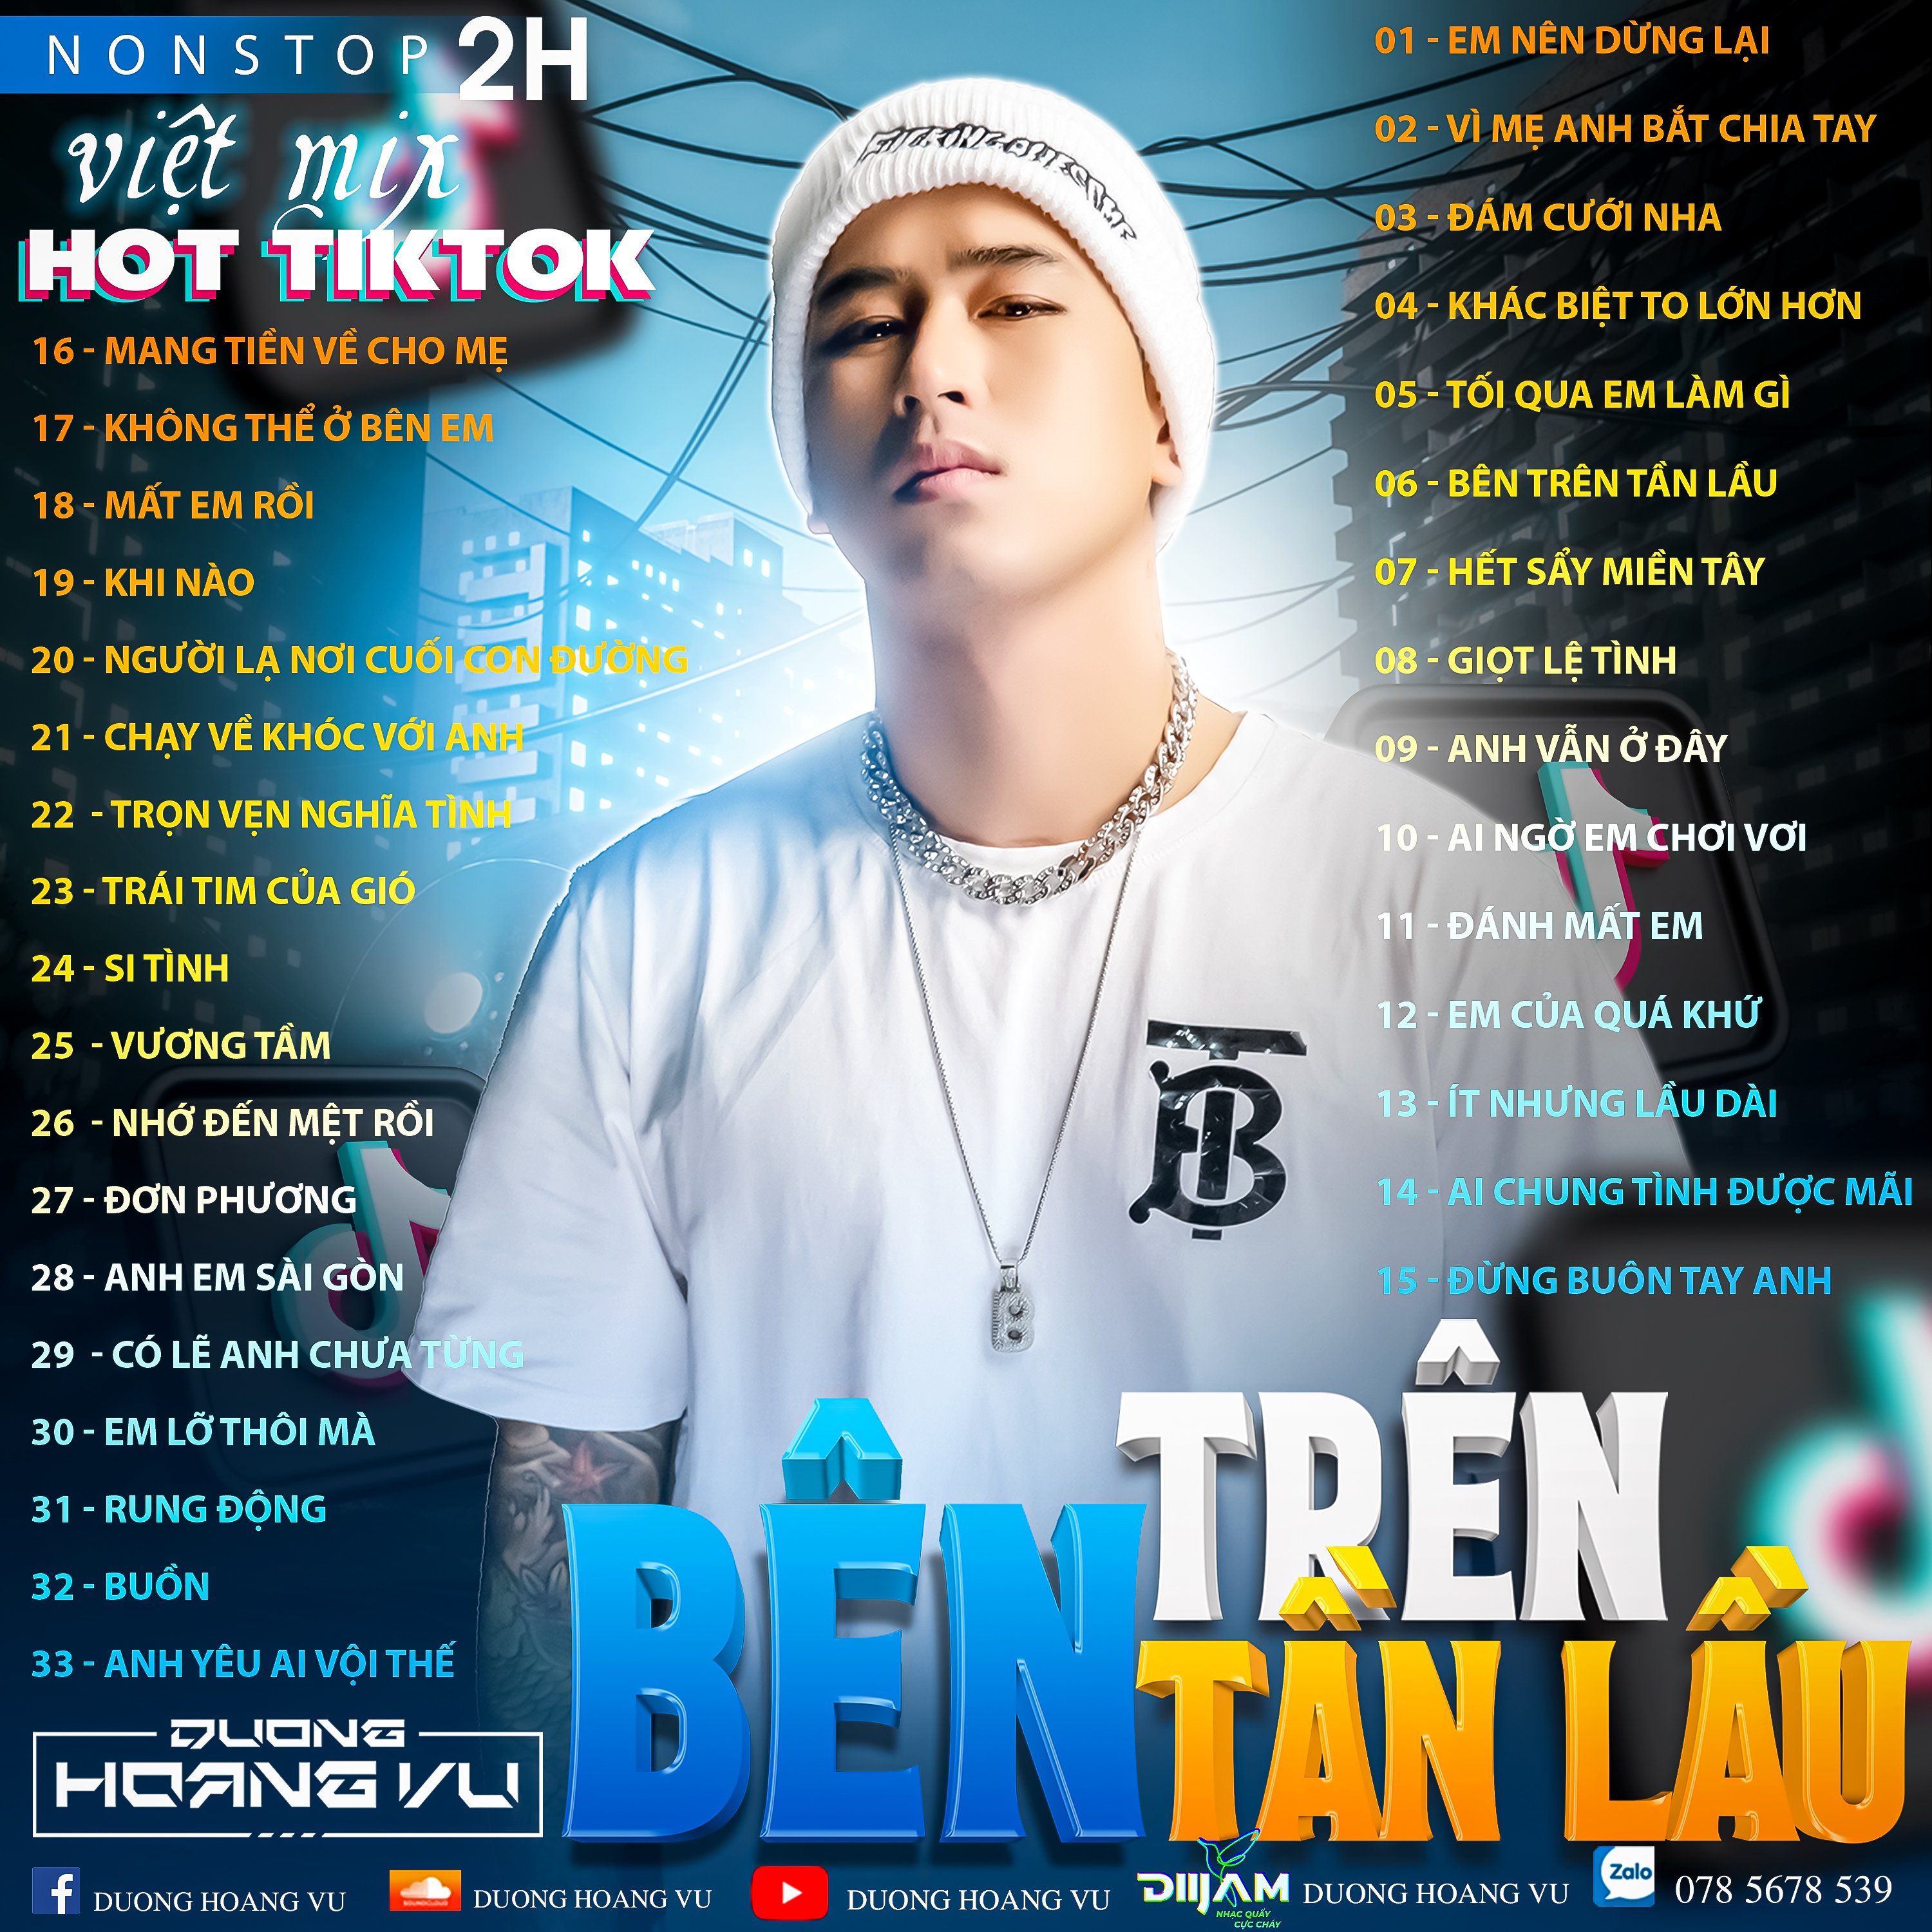 Download (Demo ) Nst Việt Mix Hot tiktok 2h - 2022 - DJ Dương Hoàng Vũ Mix Mua Full IB Zalo 078.5678.539